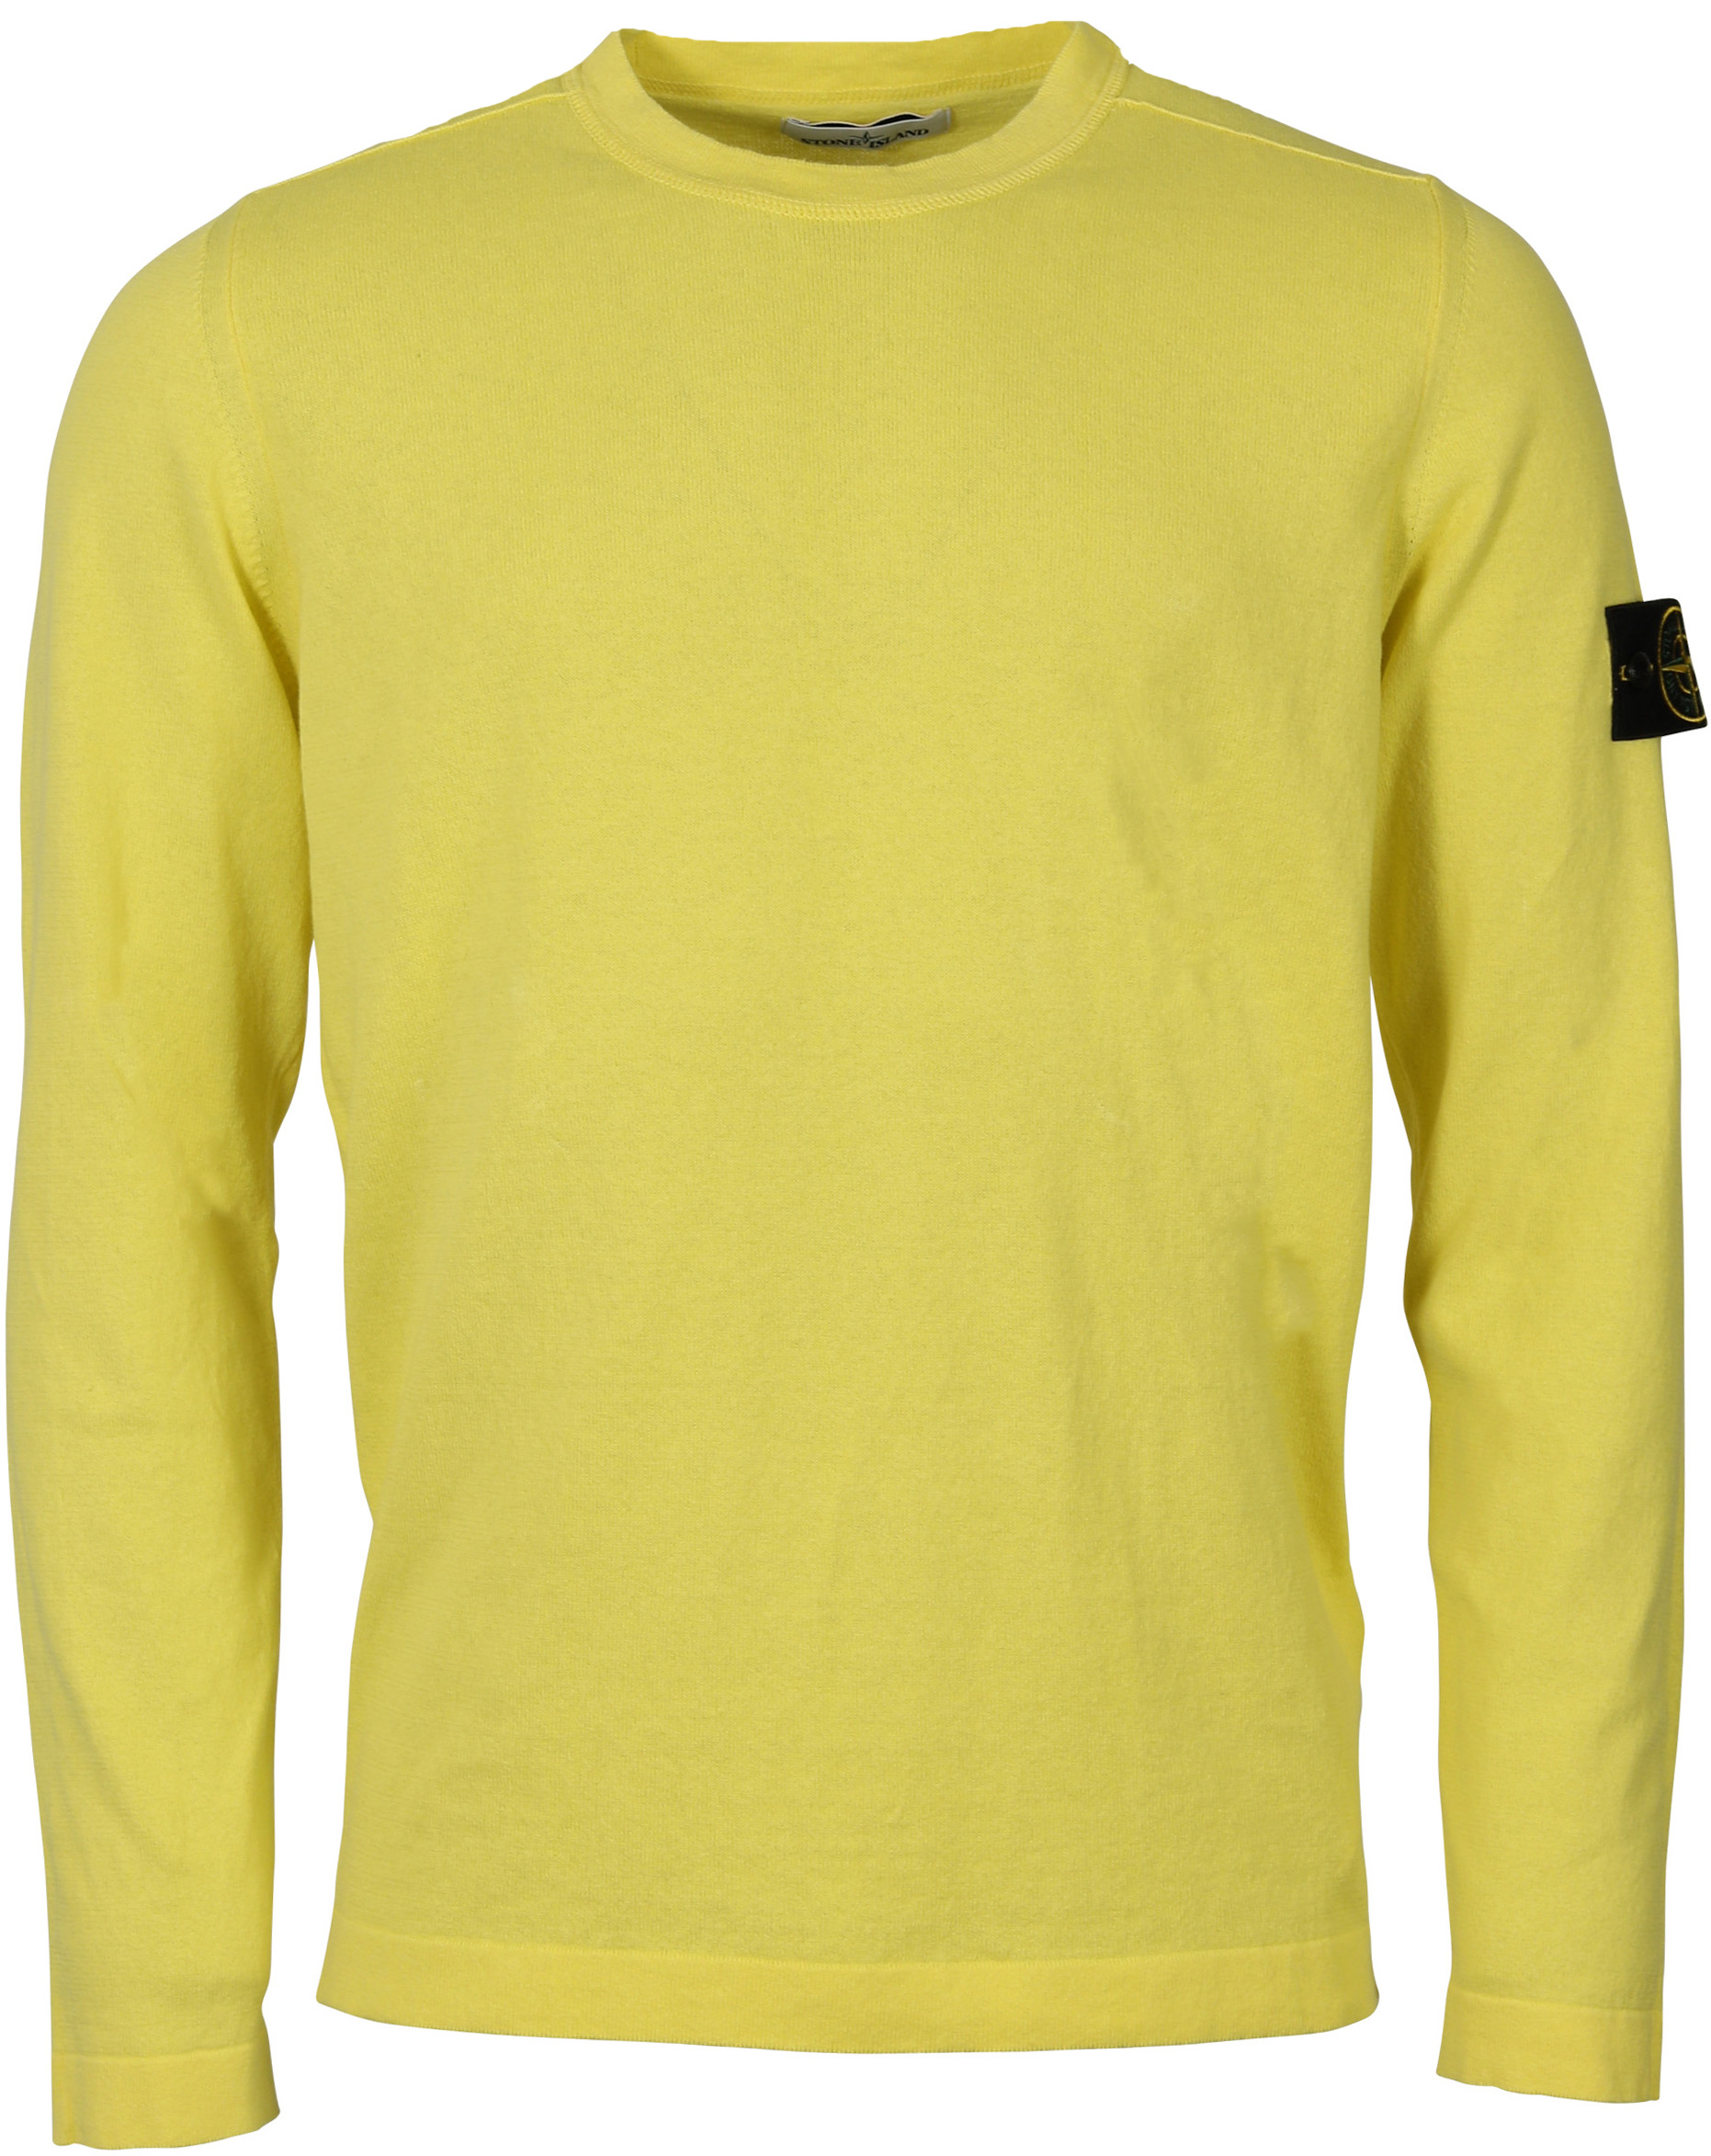 Stone Island Knit Sweater Yellow 3XL